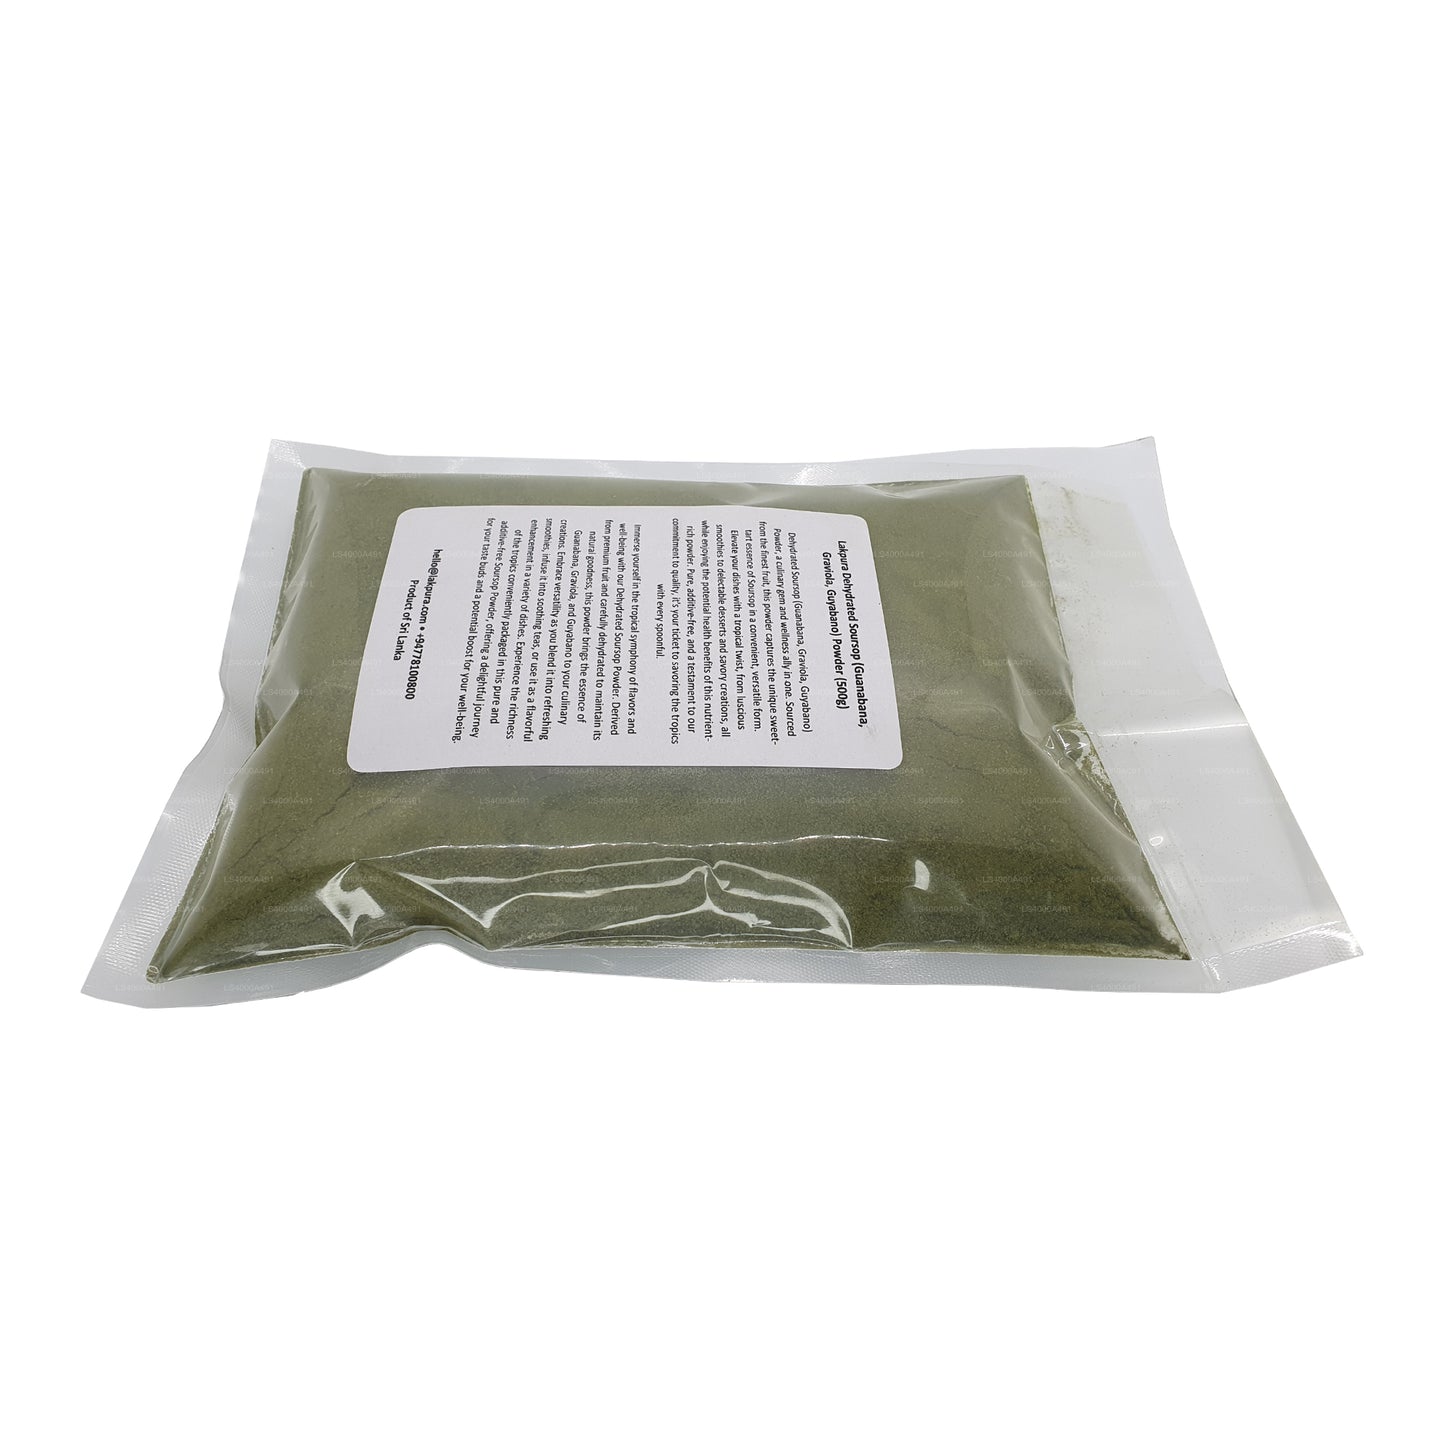 Lakpura Bio Soursop Graviola Pulver (100 g)